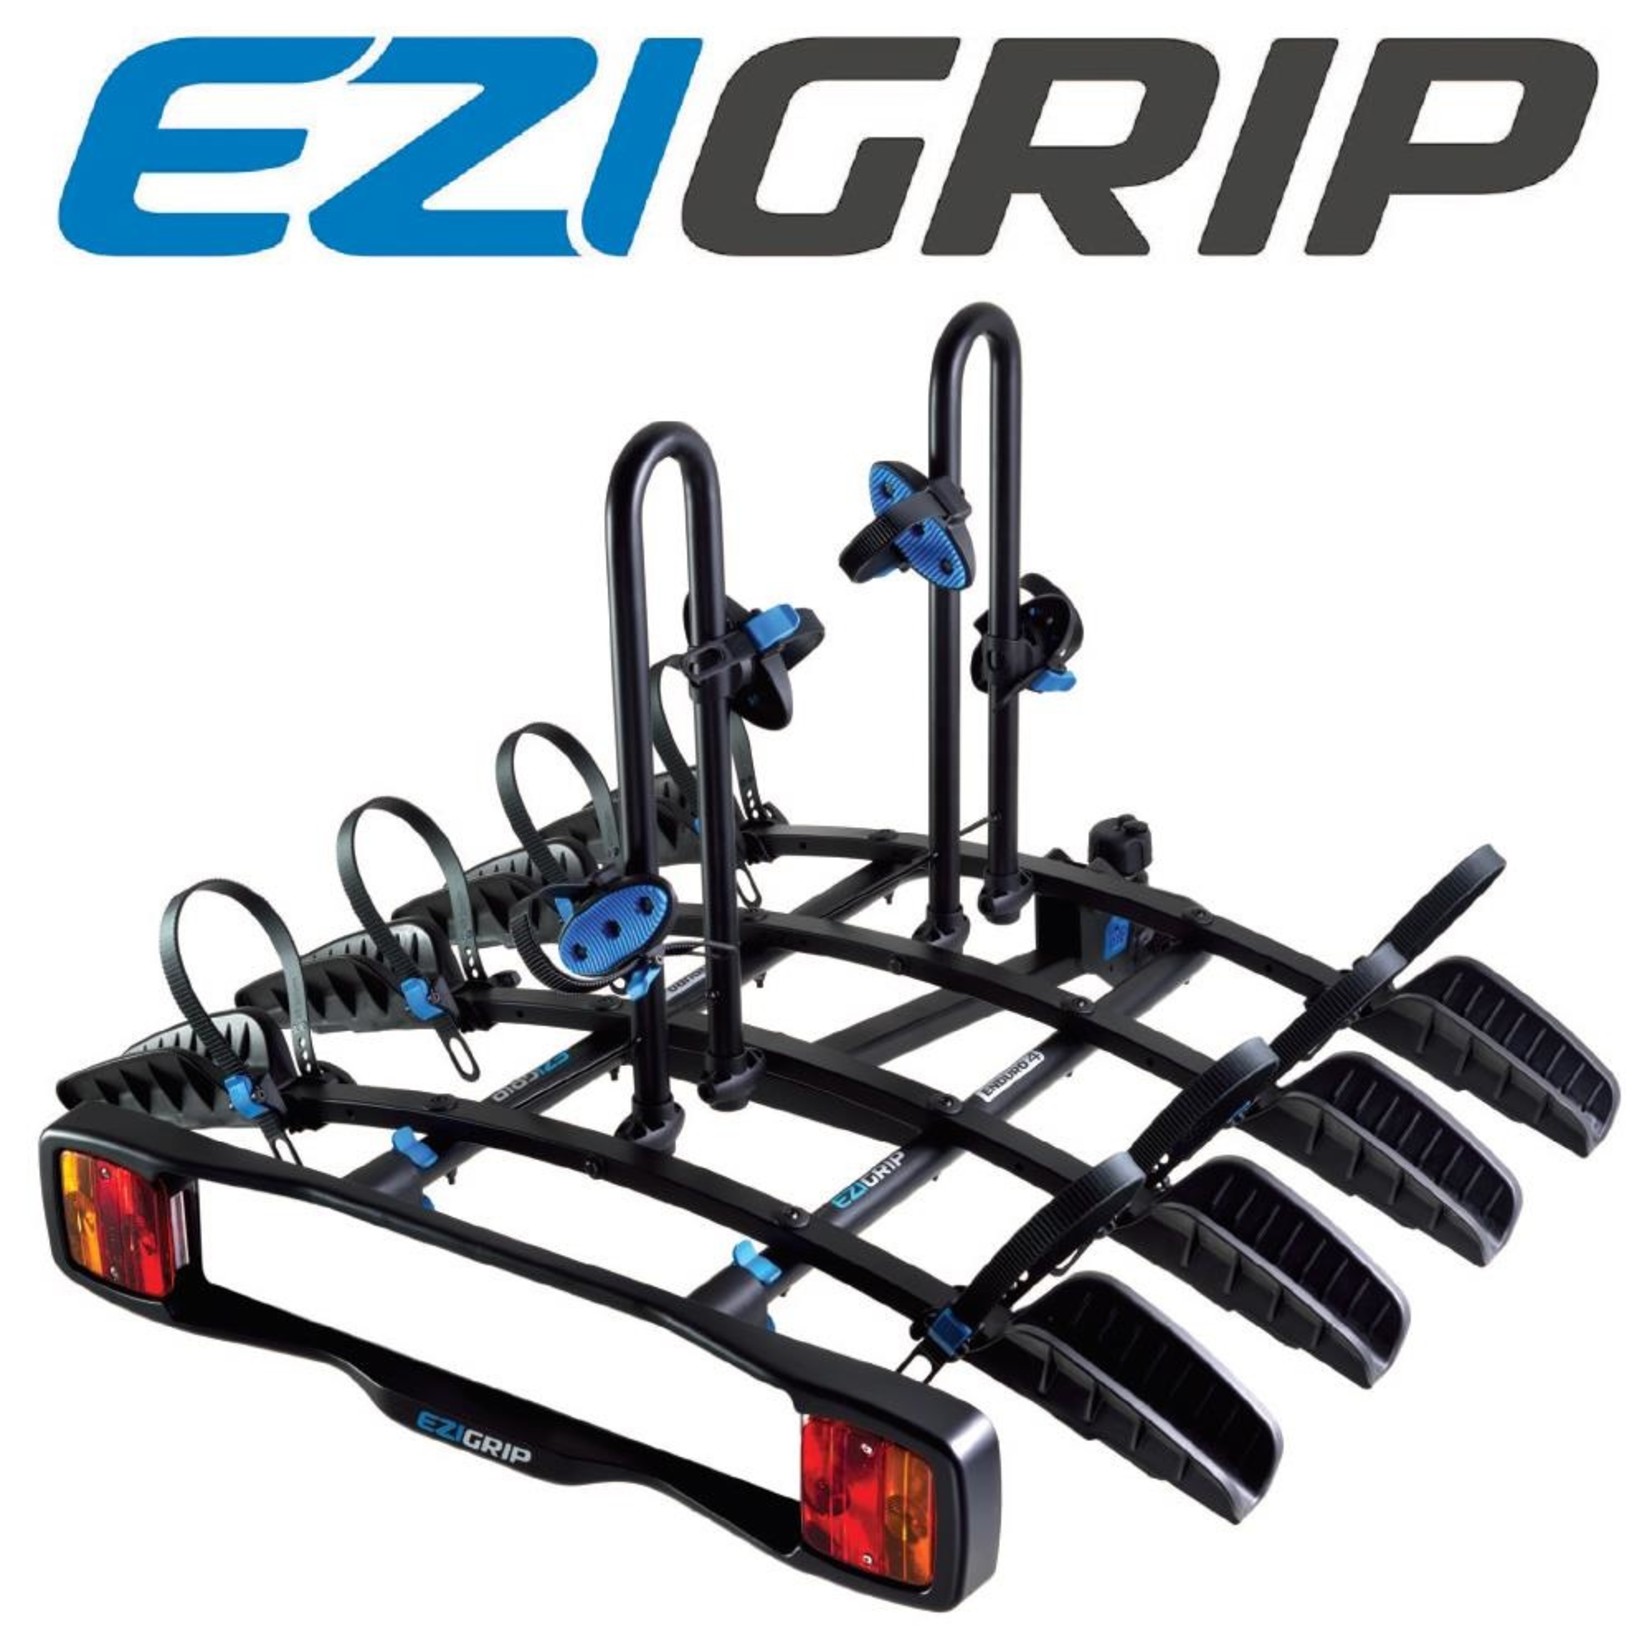 Ezi Grip EziGrip Enduro 4 Bike Rack - Towball Mounted Bike Rack - 60KG(Max 15kg Per Bike)